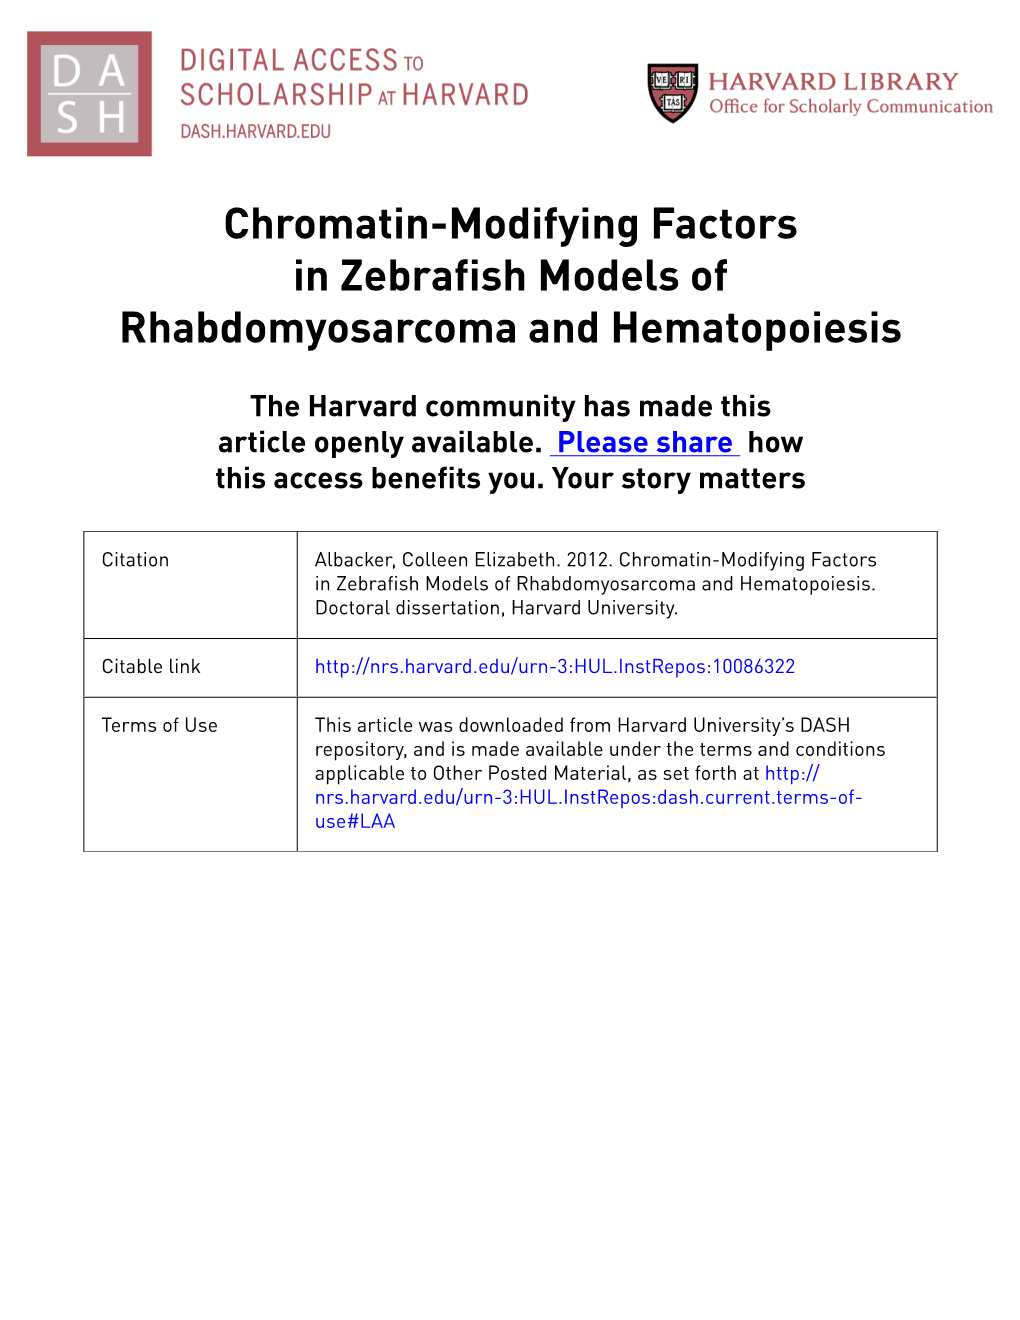 Chromatin-Modifying Factors in Zebrafish Models of Rhabdomyosarcoma and Hematopoiesis